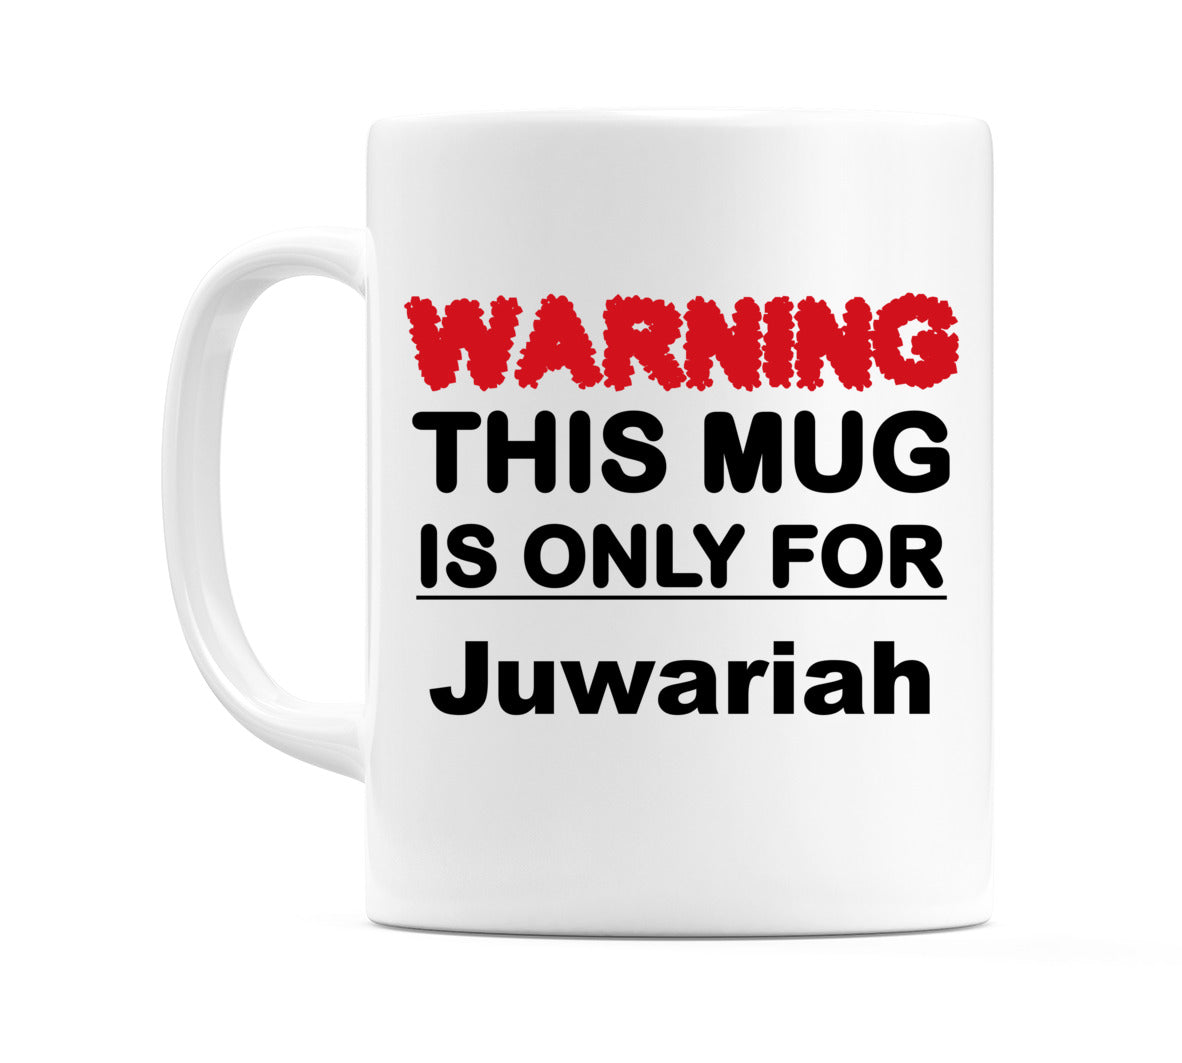 Warning This Mug is ONLY for Juwariah Mug